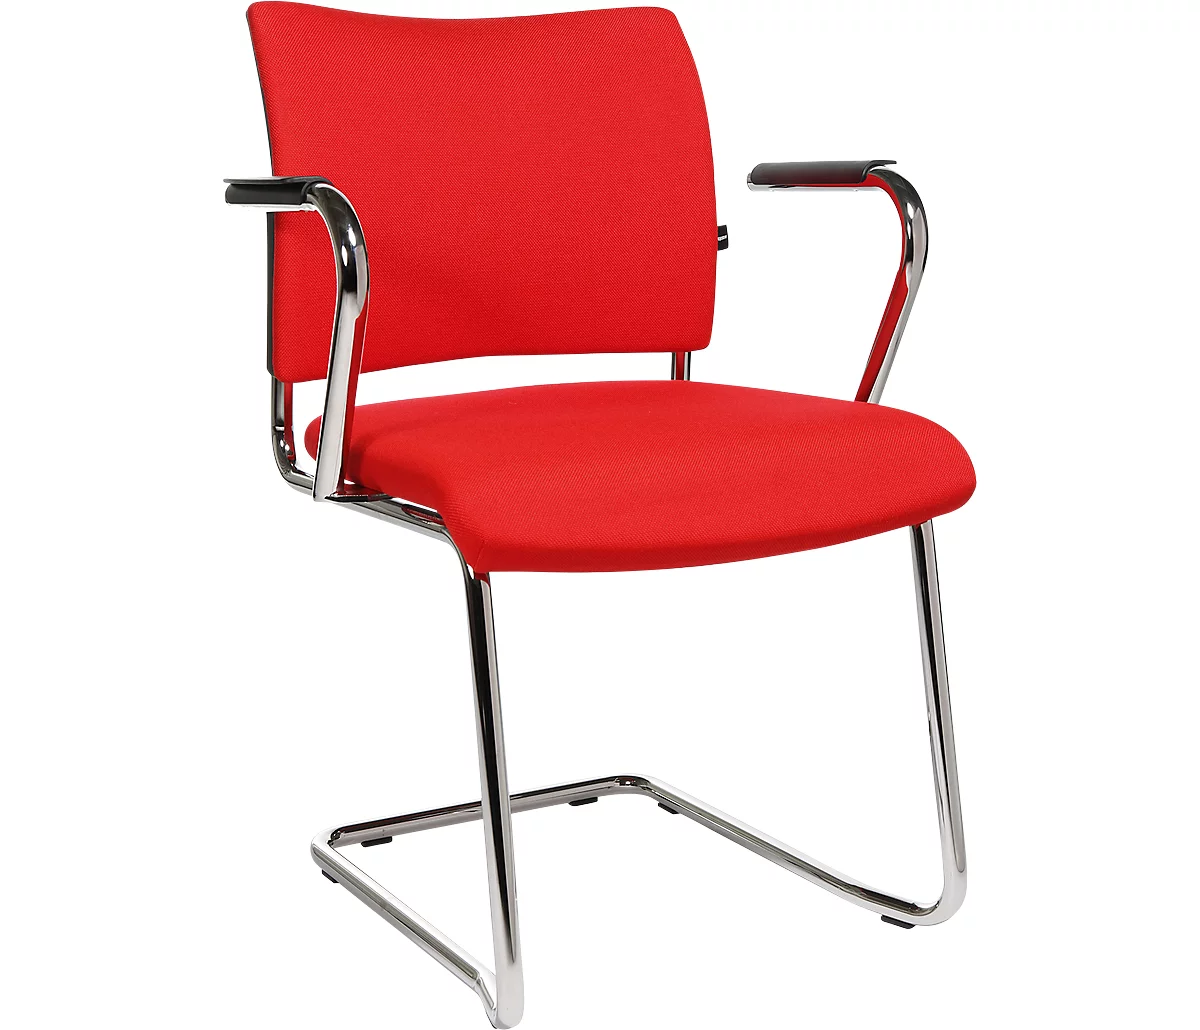 Silla cantilever SEAT POINT, acolchado, sin reposabrazos, apilable, juego de 2, rojo